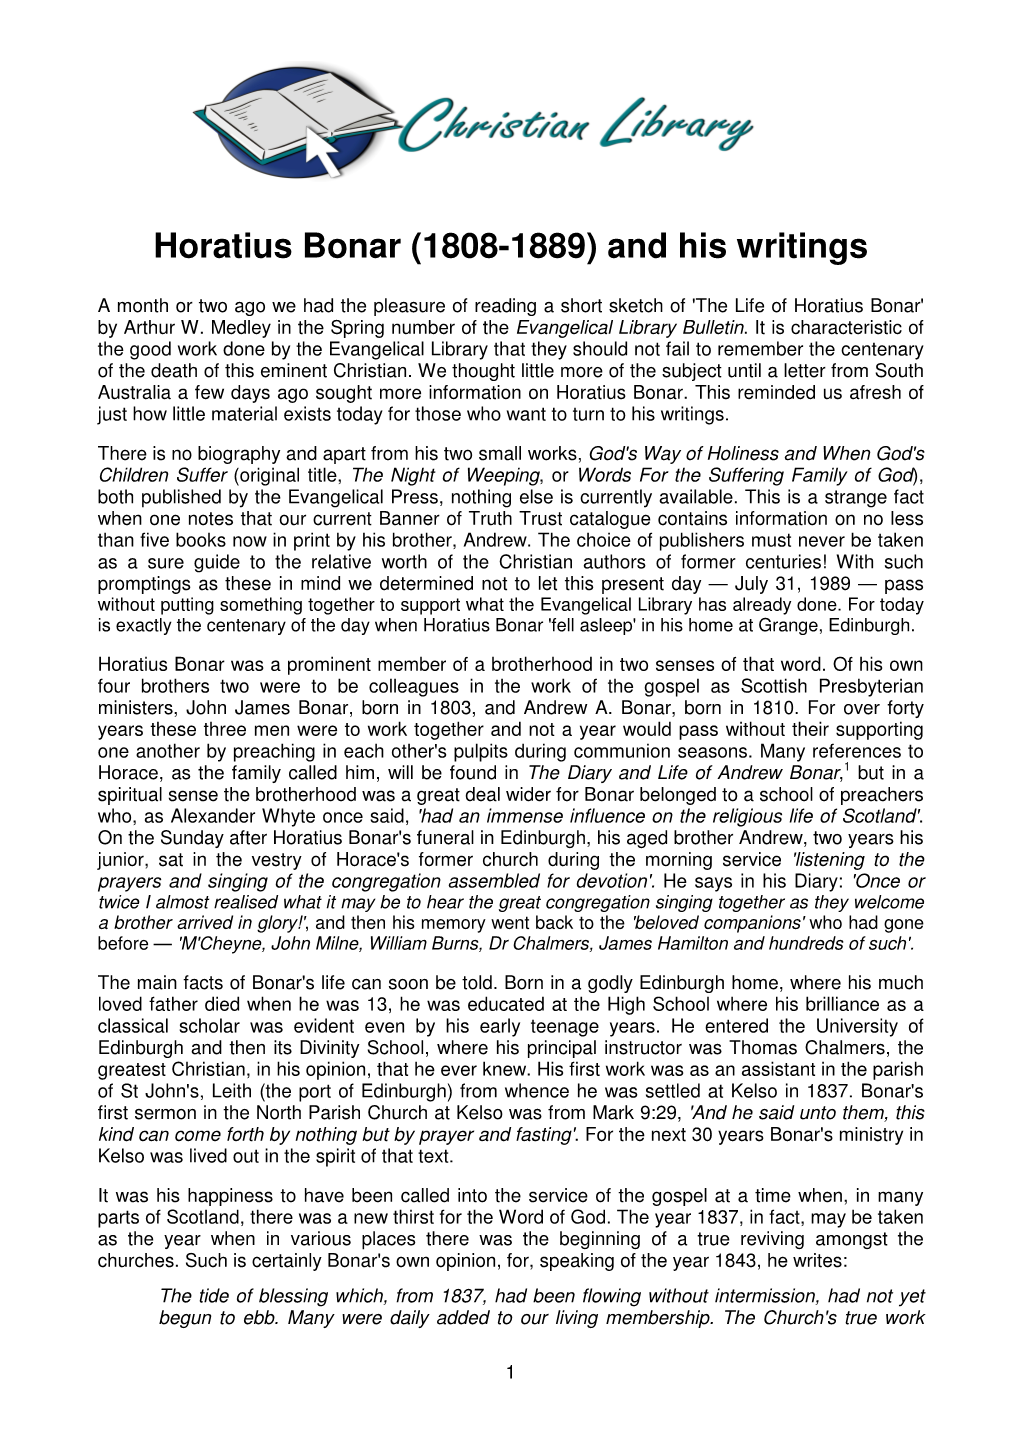 Horatius Bonar (1808-1889) and His Writings